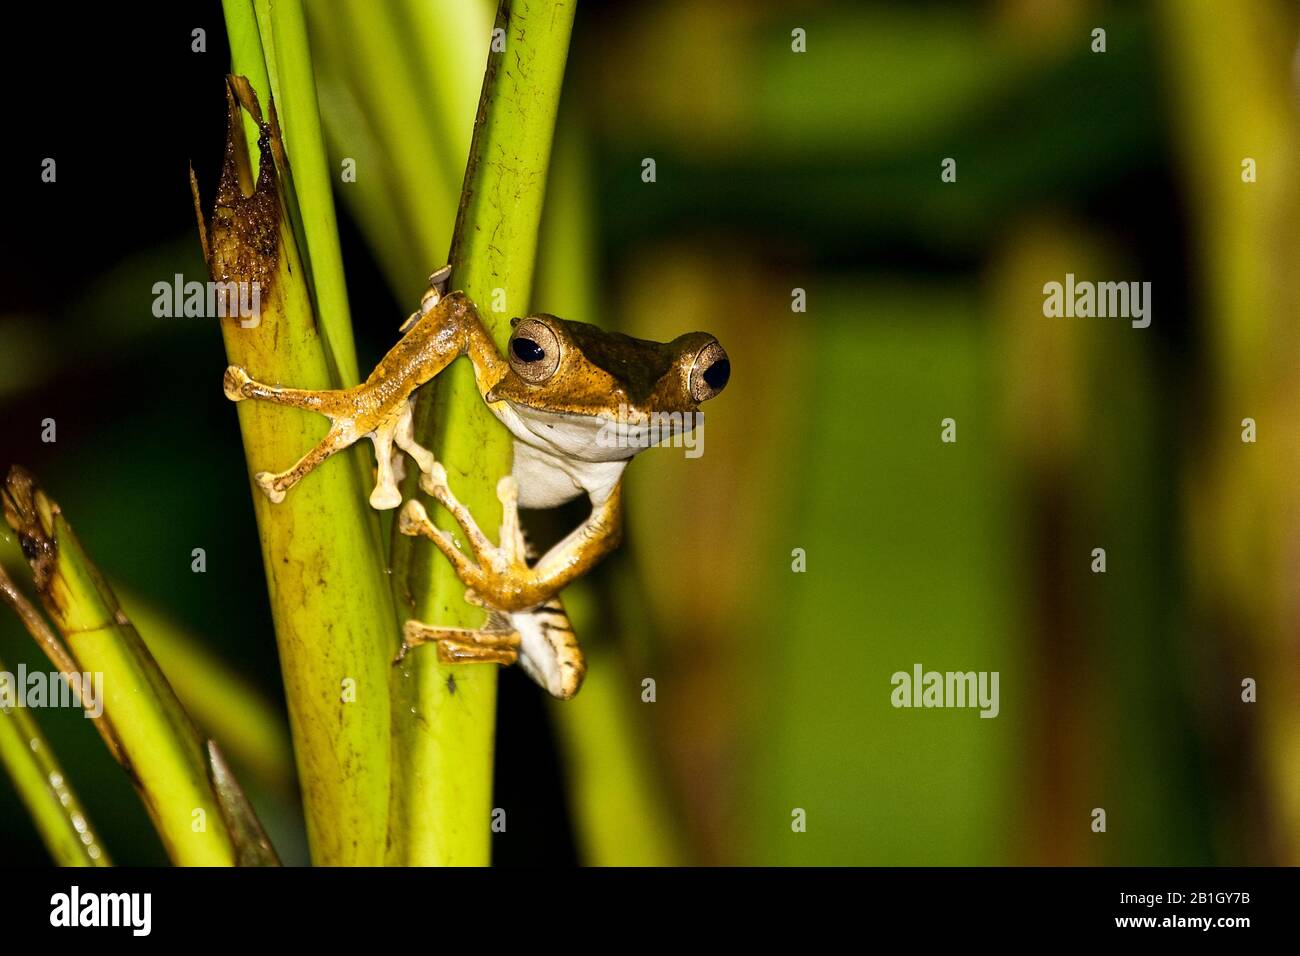 Grenouille arborescente, grenouille Bornéo-osée ou grenouille volante à tête osseuse (Polypedates otilophus), assise sur une tige, vue de face, Malaisie, Bornéo Banque D'Images